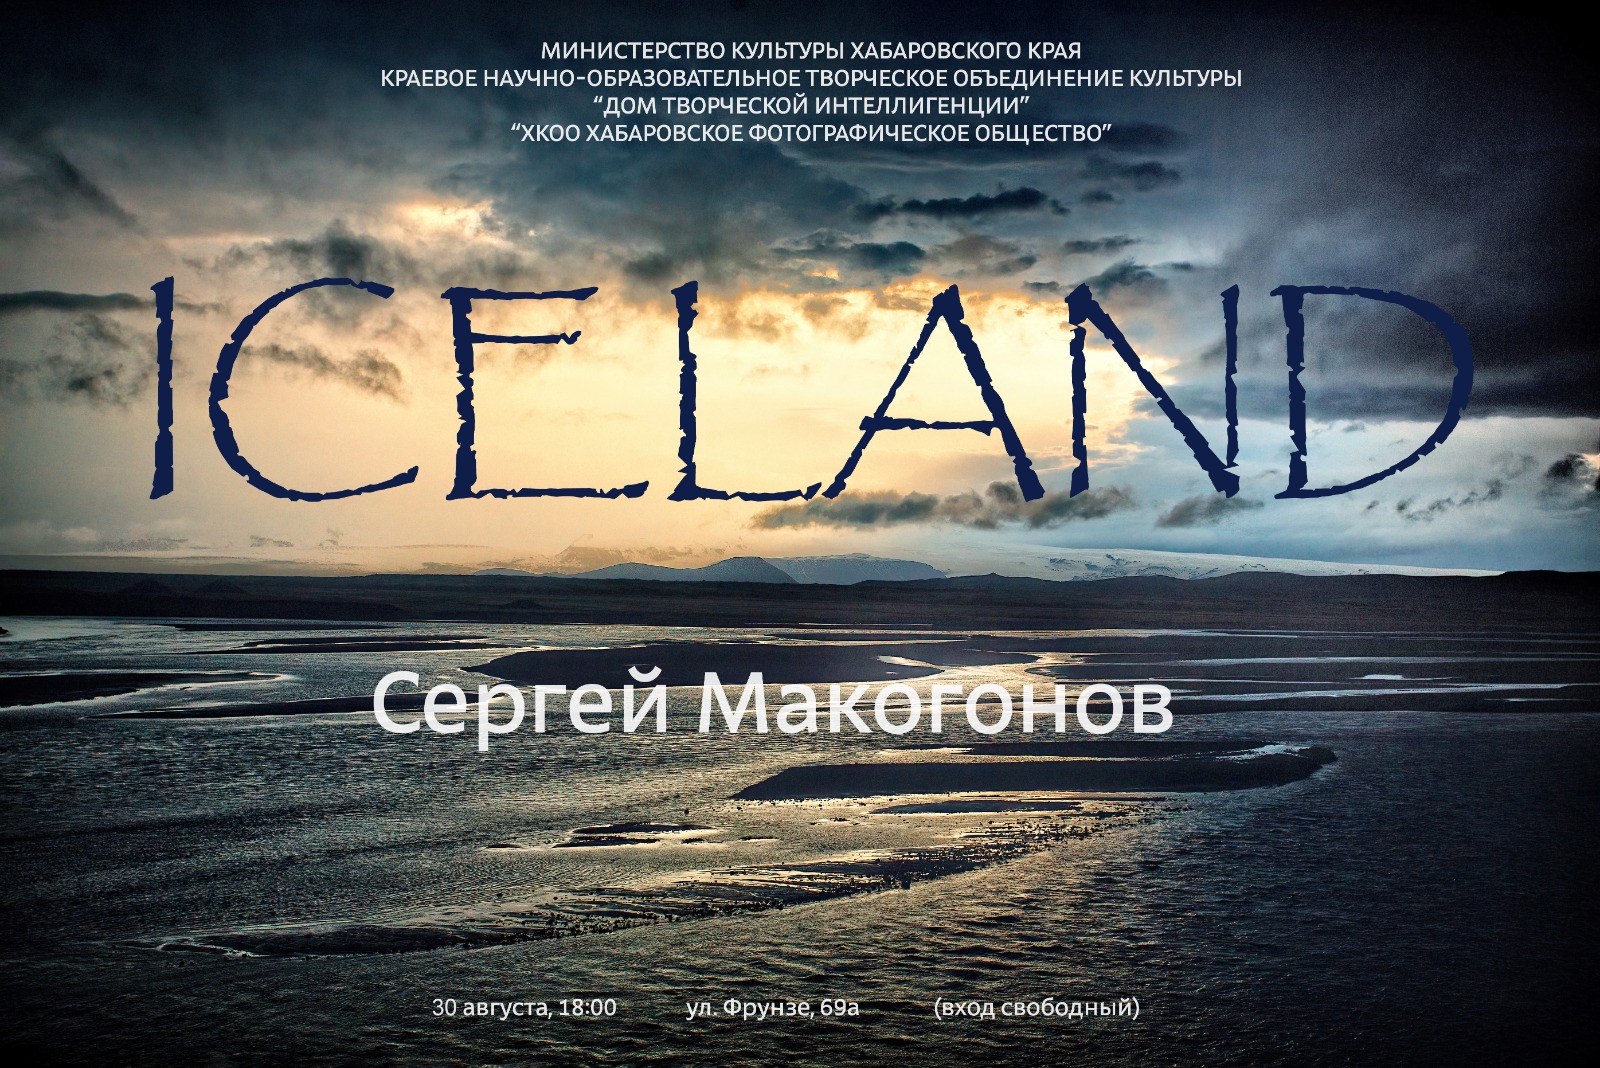 You are currently viewing Фотовыставка Сергея Макагонова «Исландия» откроется в Доме творческой интеллигенции